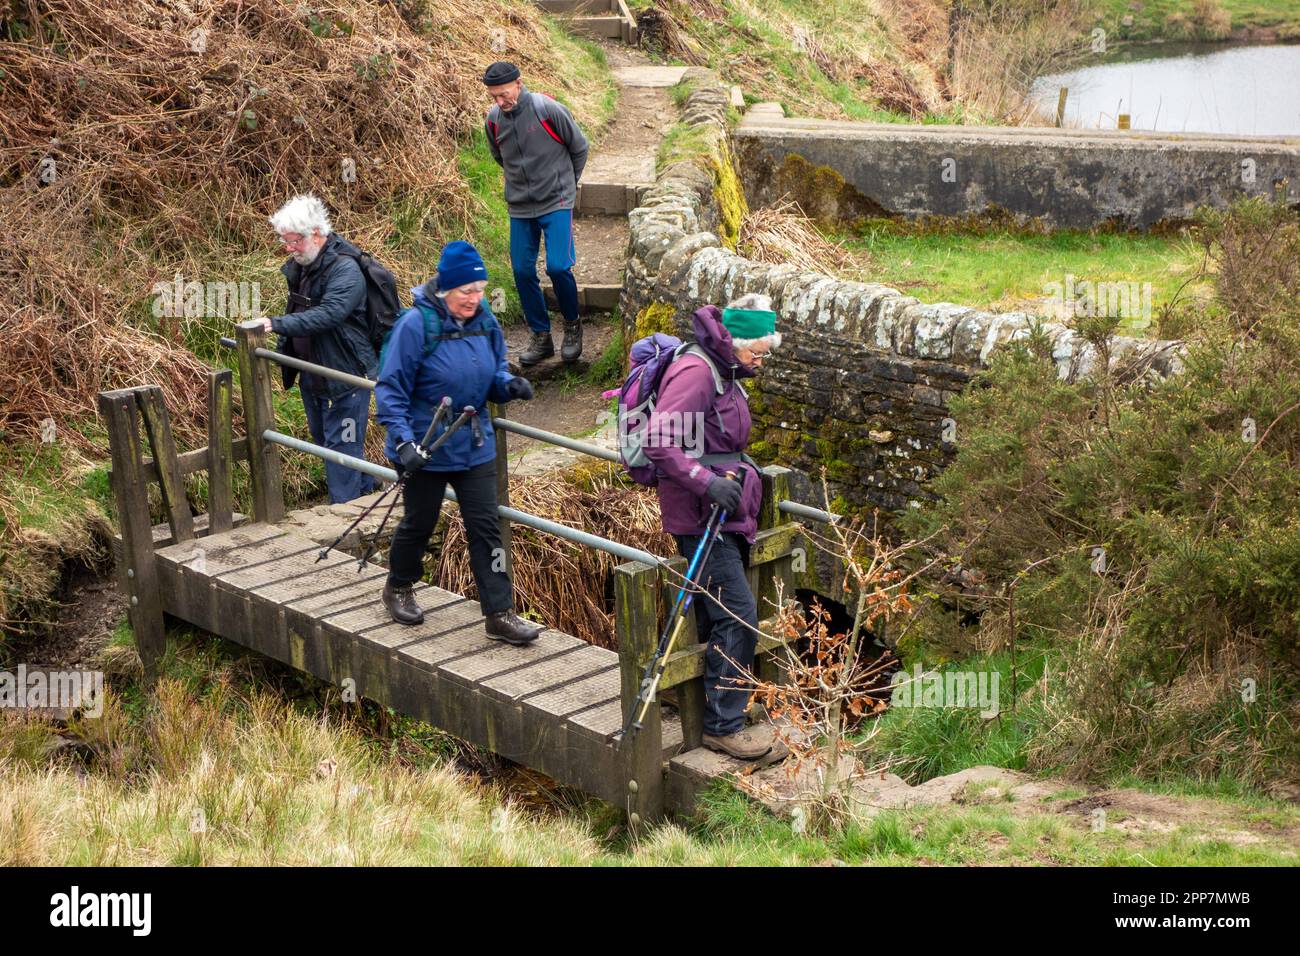 Les membres du groupe de marche Sandbach U3A de long appréciant les randonnées dans les collines du Peak District au-dessus de la ville Derbyshire de Buxton Angleterre Banque D'Images